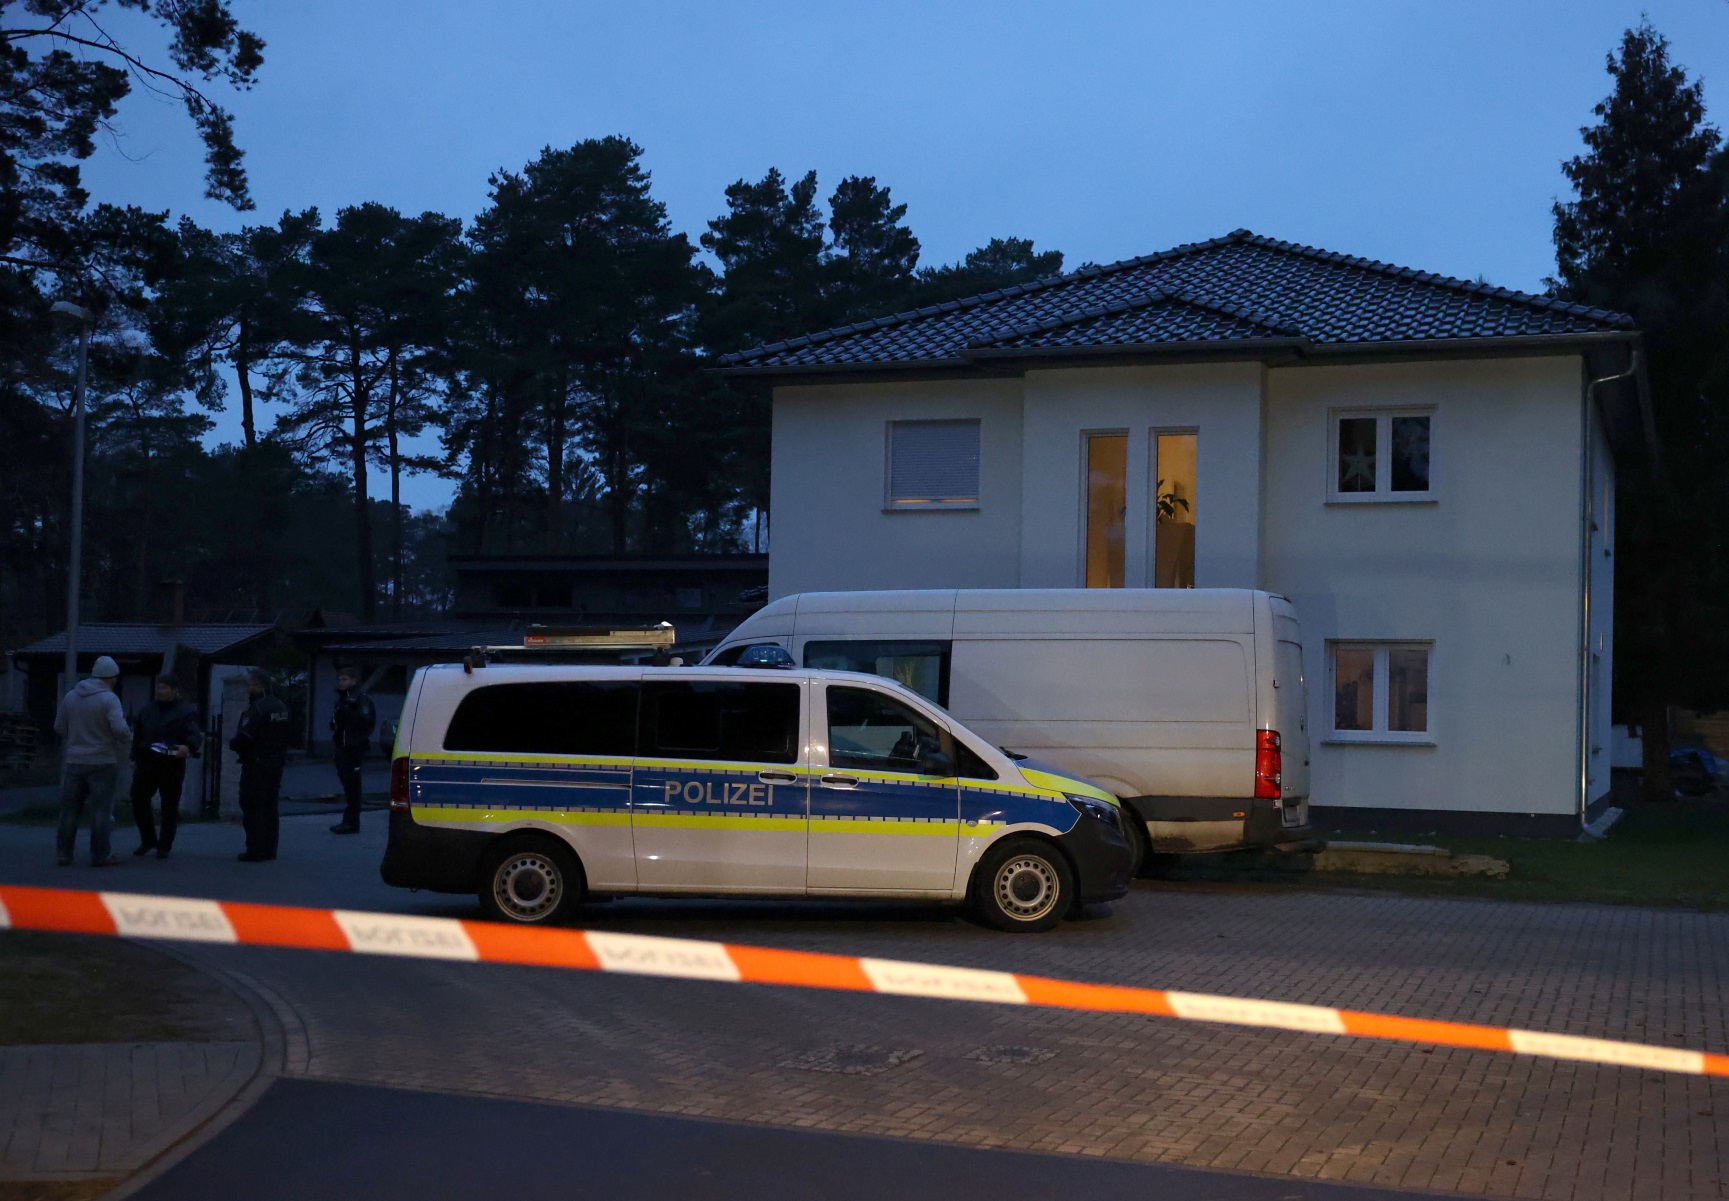 Φρίκη στο Βερολίνο: Πέντε πτώματα σε σπίτι, ανάμεσά τους τριών παιδιών